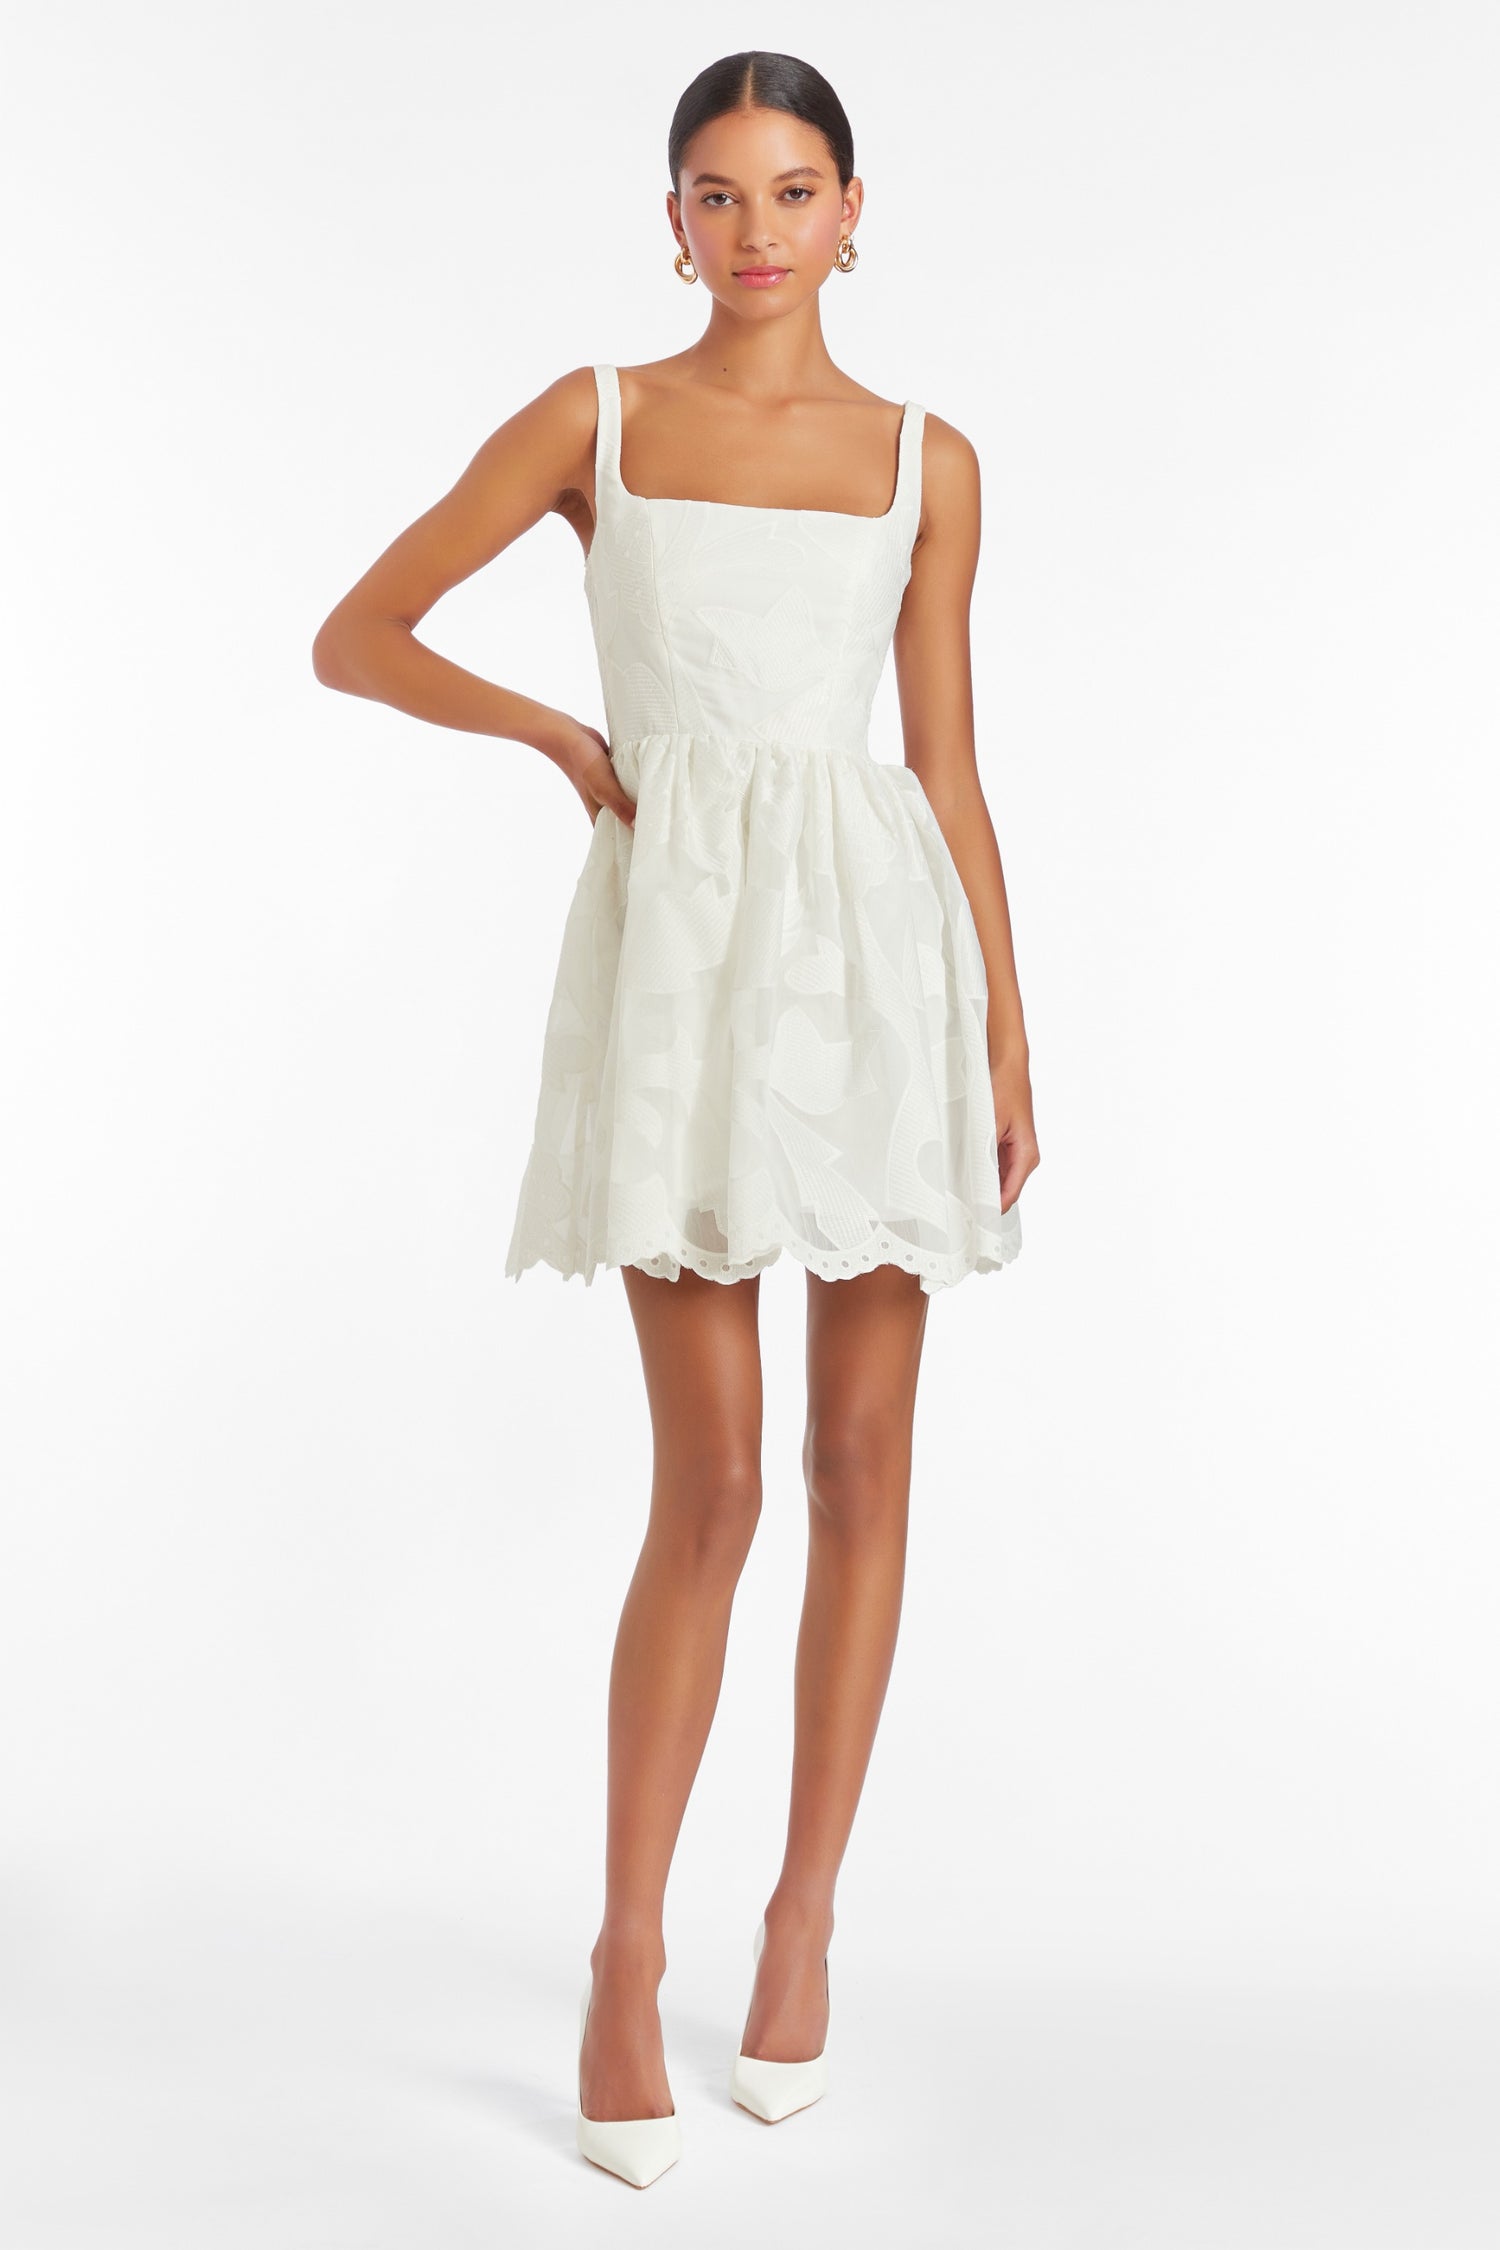 Gracelyn Dress in White